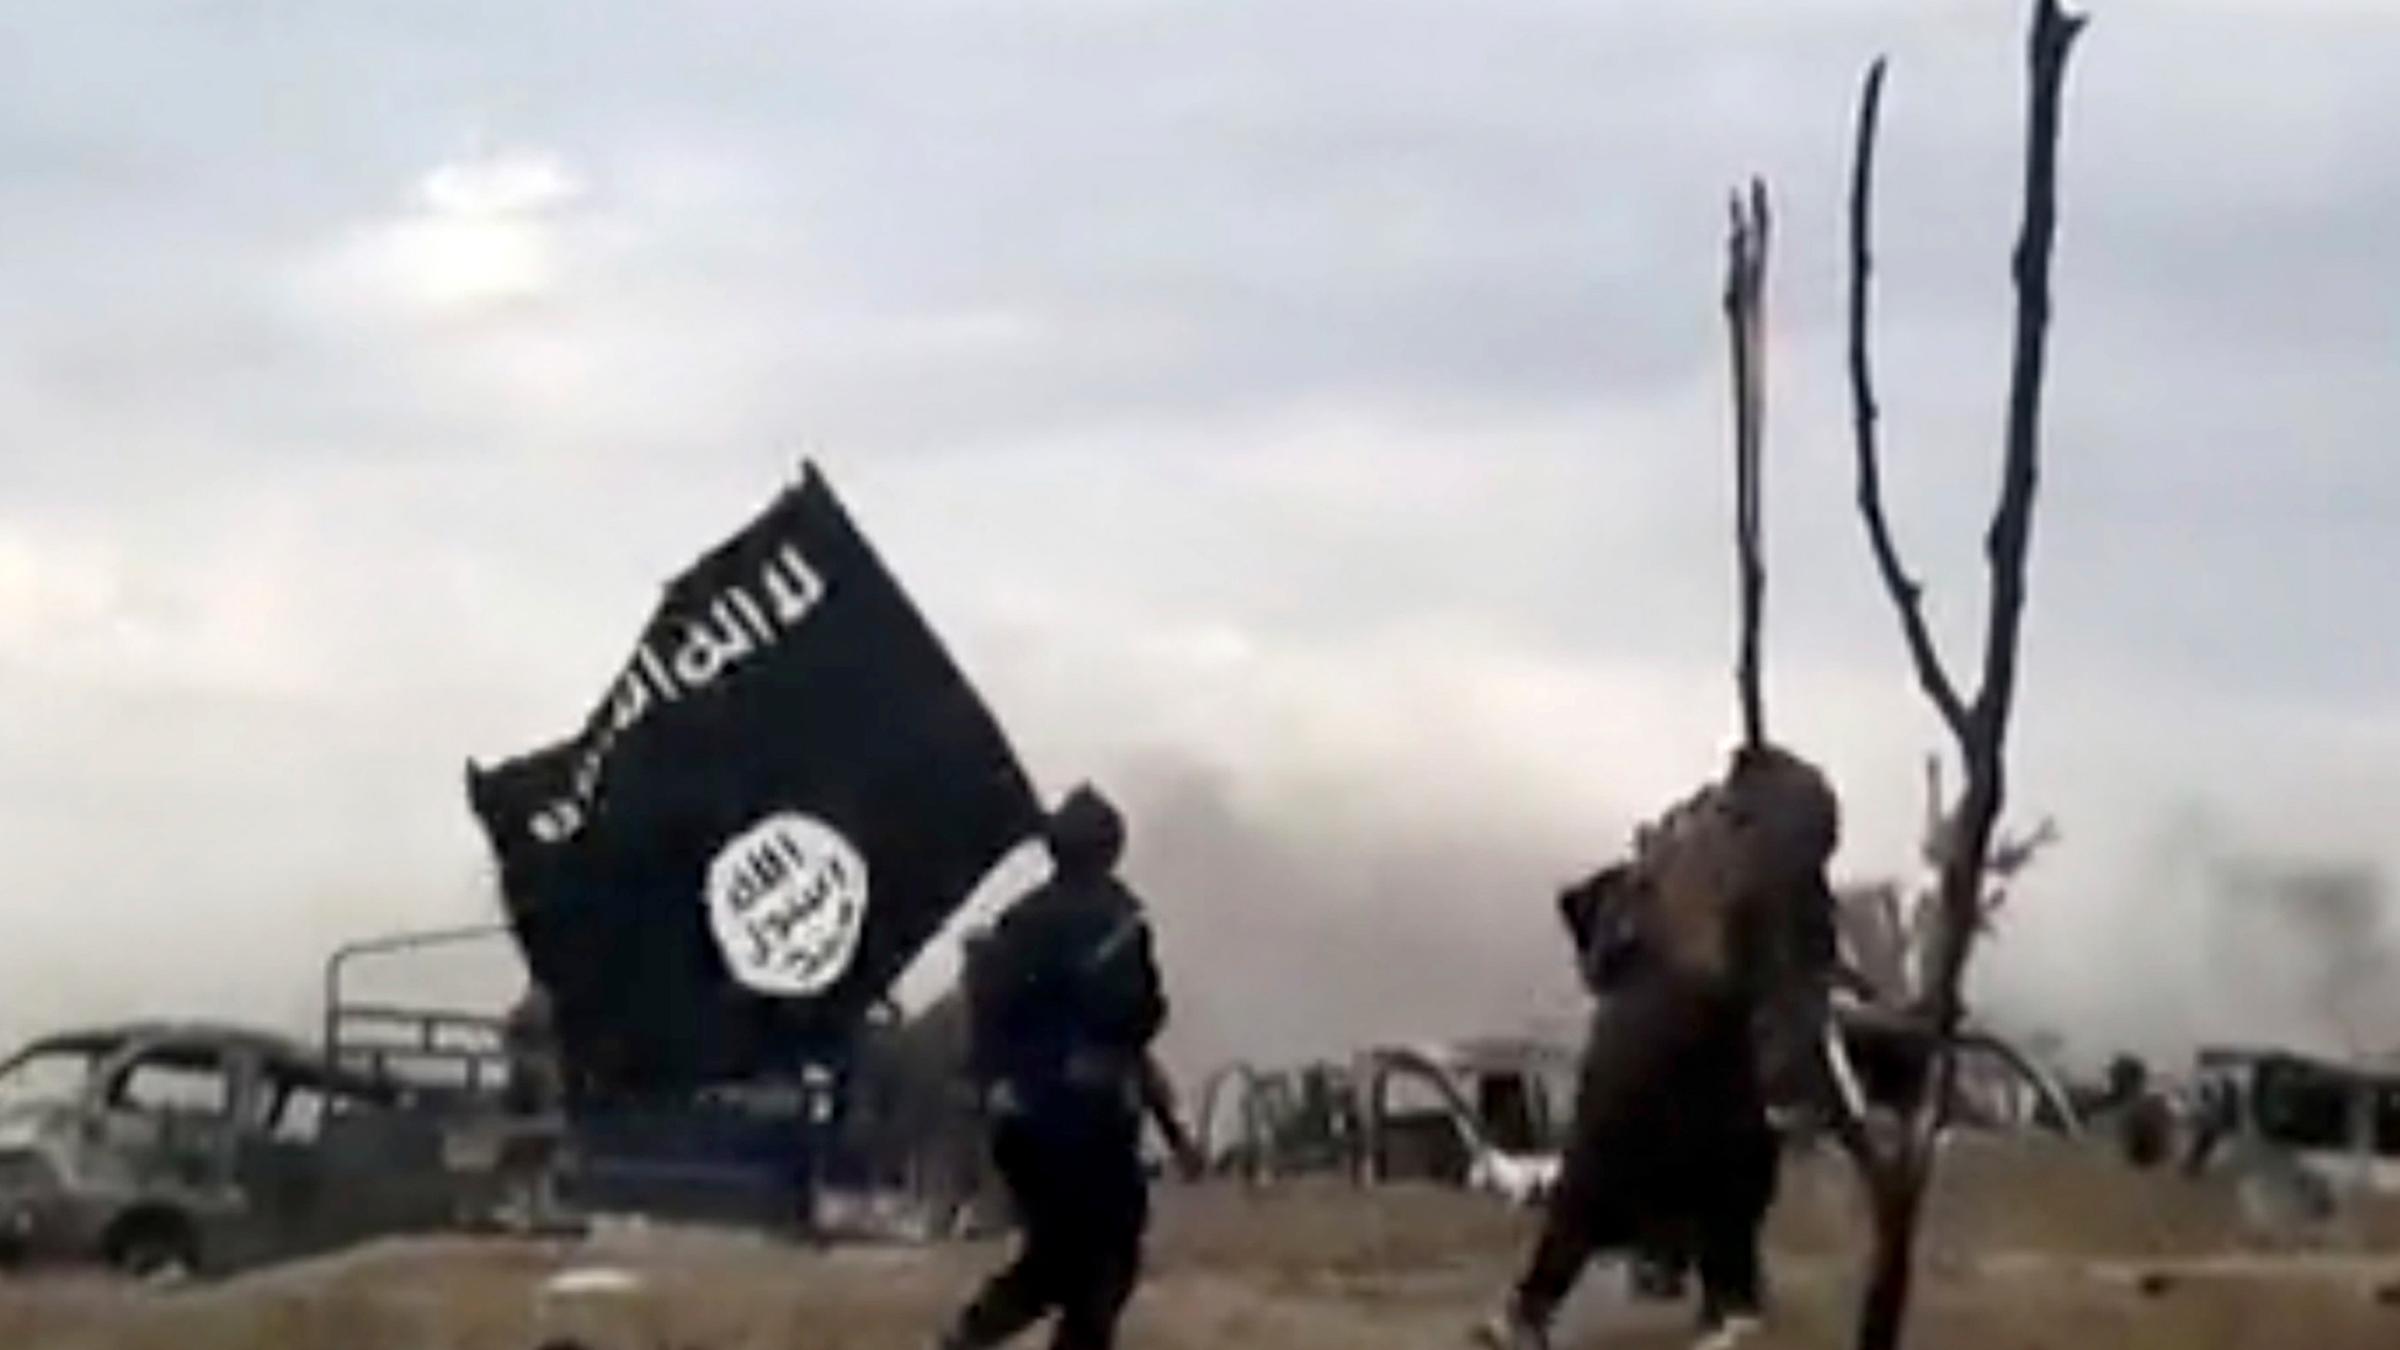 Das unscharfe Bild zeigt zwei IS-Kämpfer, die über einen Sandhaufel lau...</p>

                        <a href=